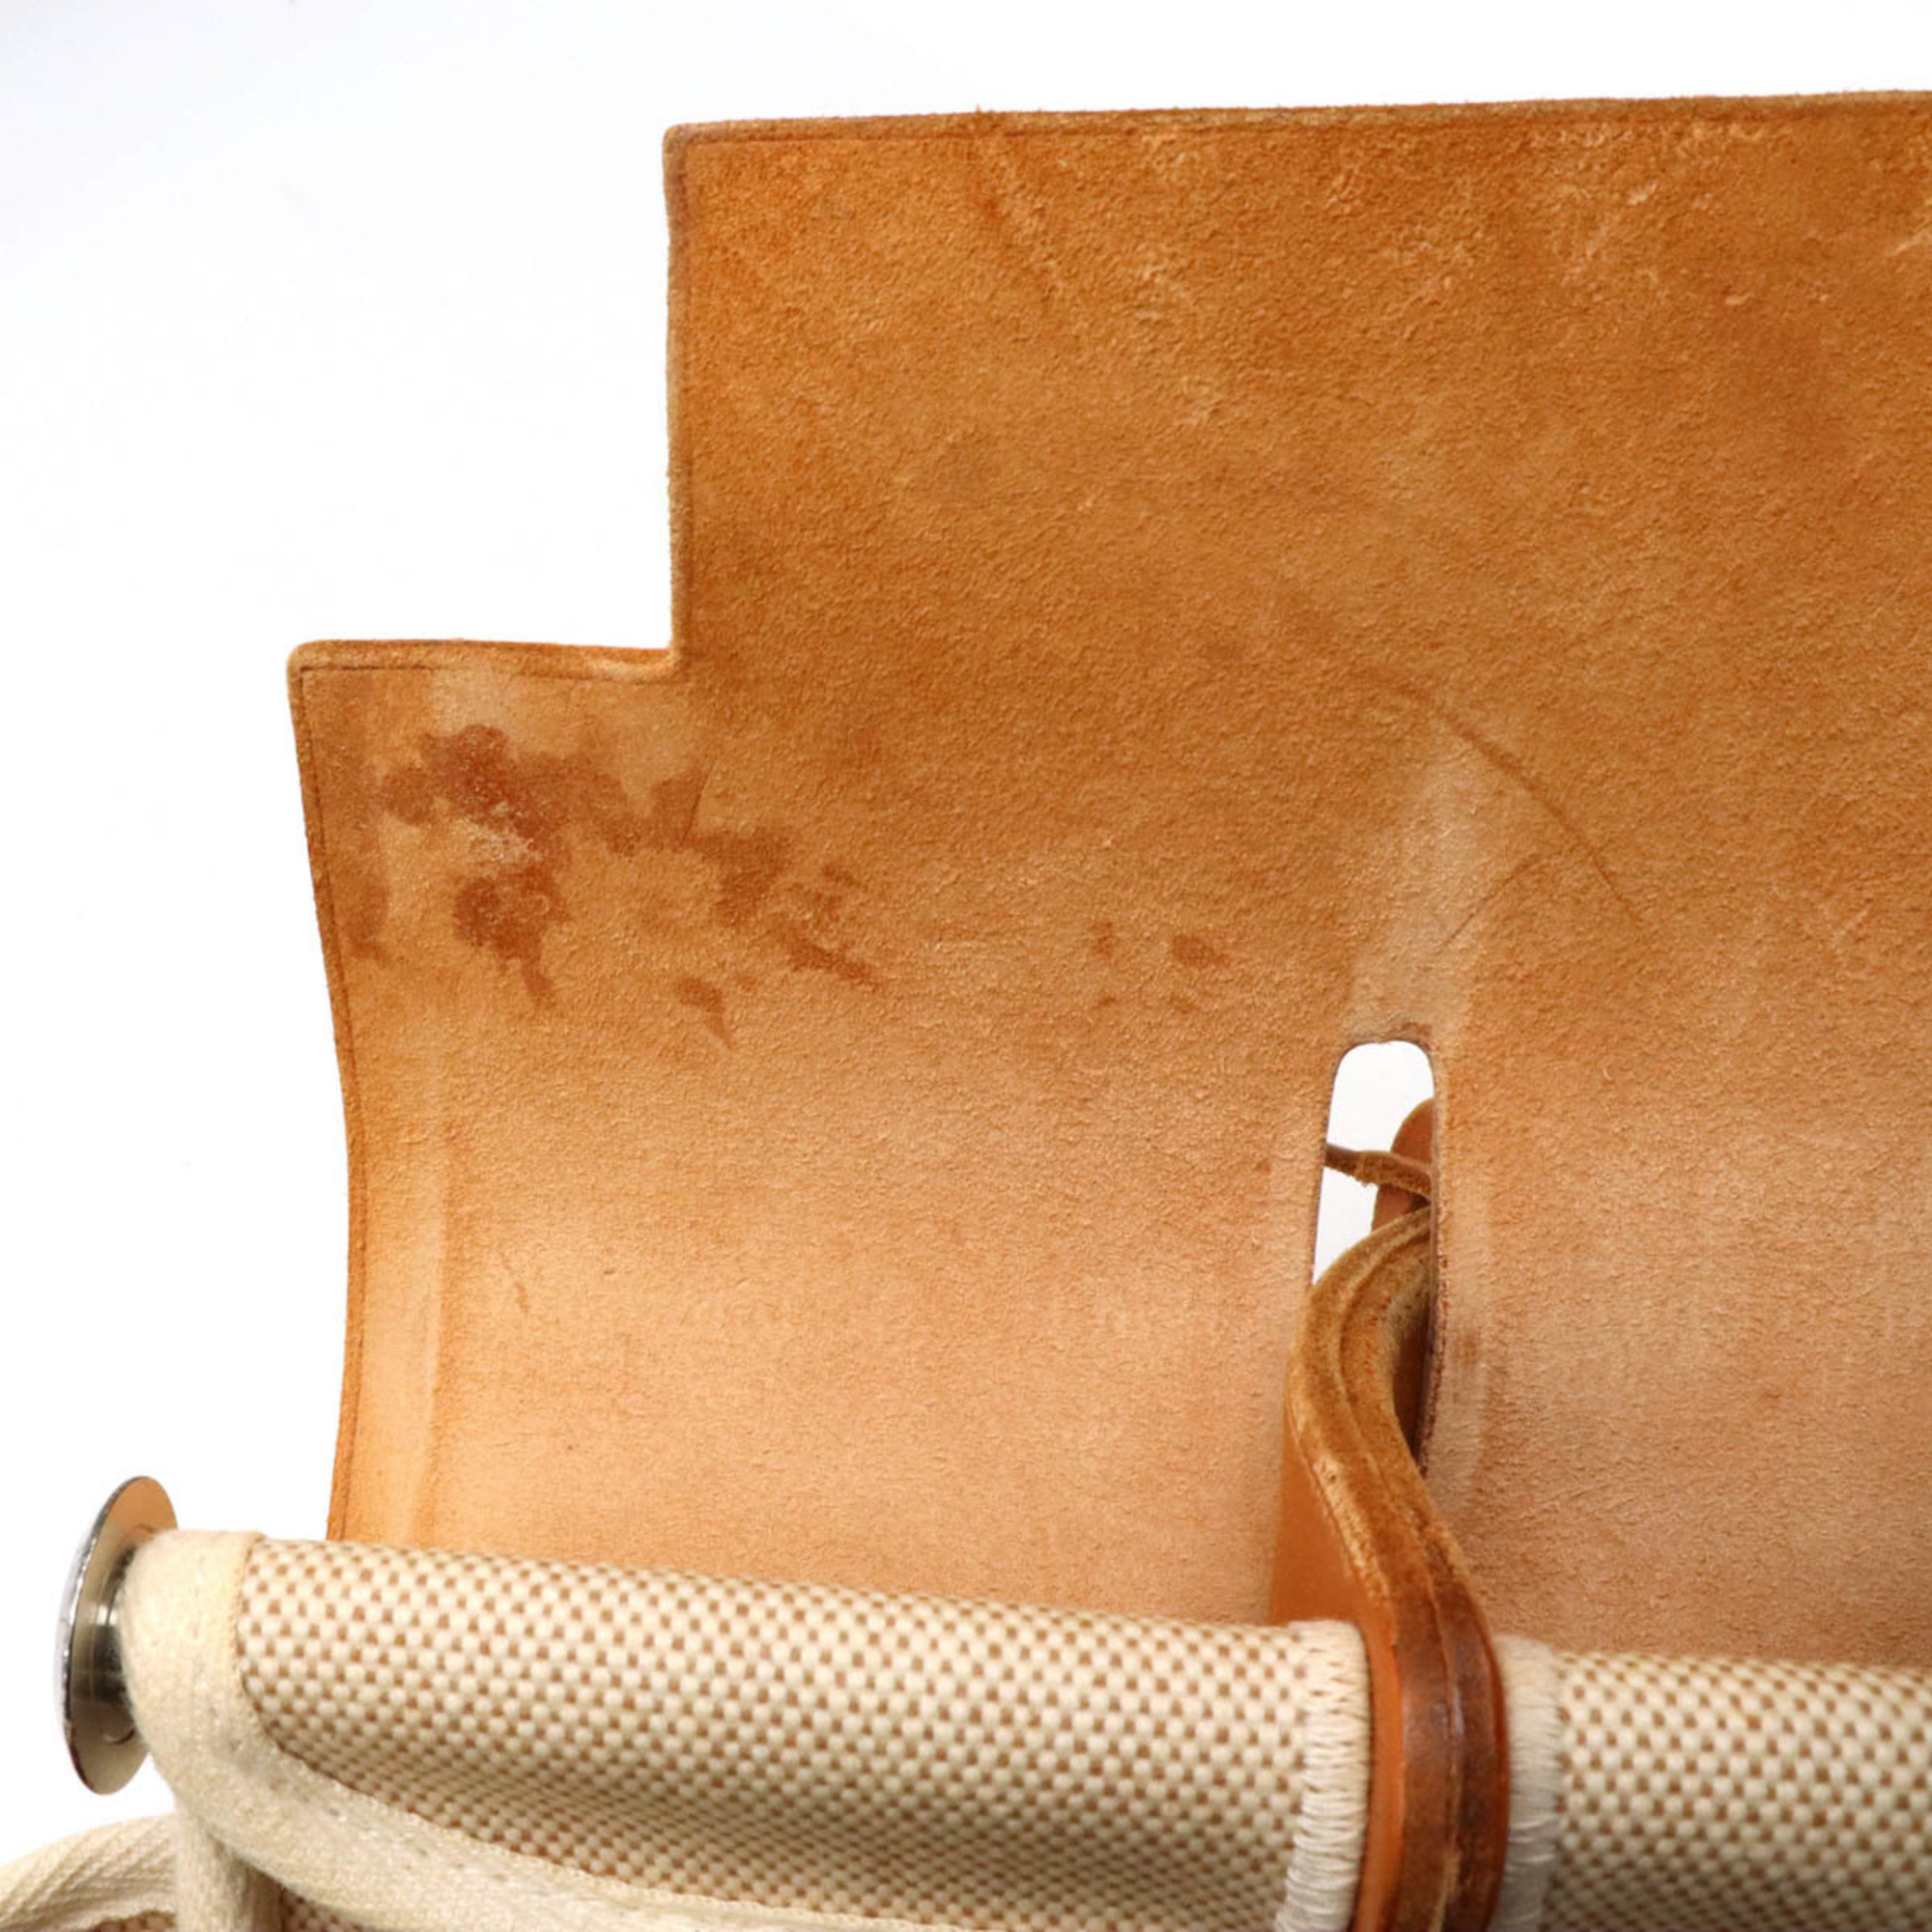 HERMES Ale Bag Ad PM Rucksack Backpack Handbag Toile Ash Leather Beige Natural □D stamp